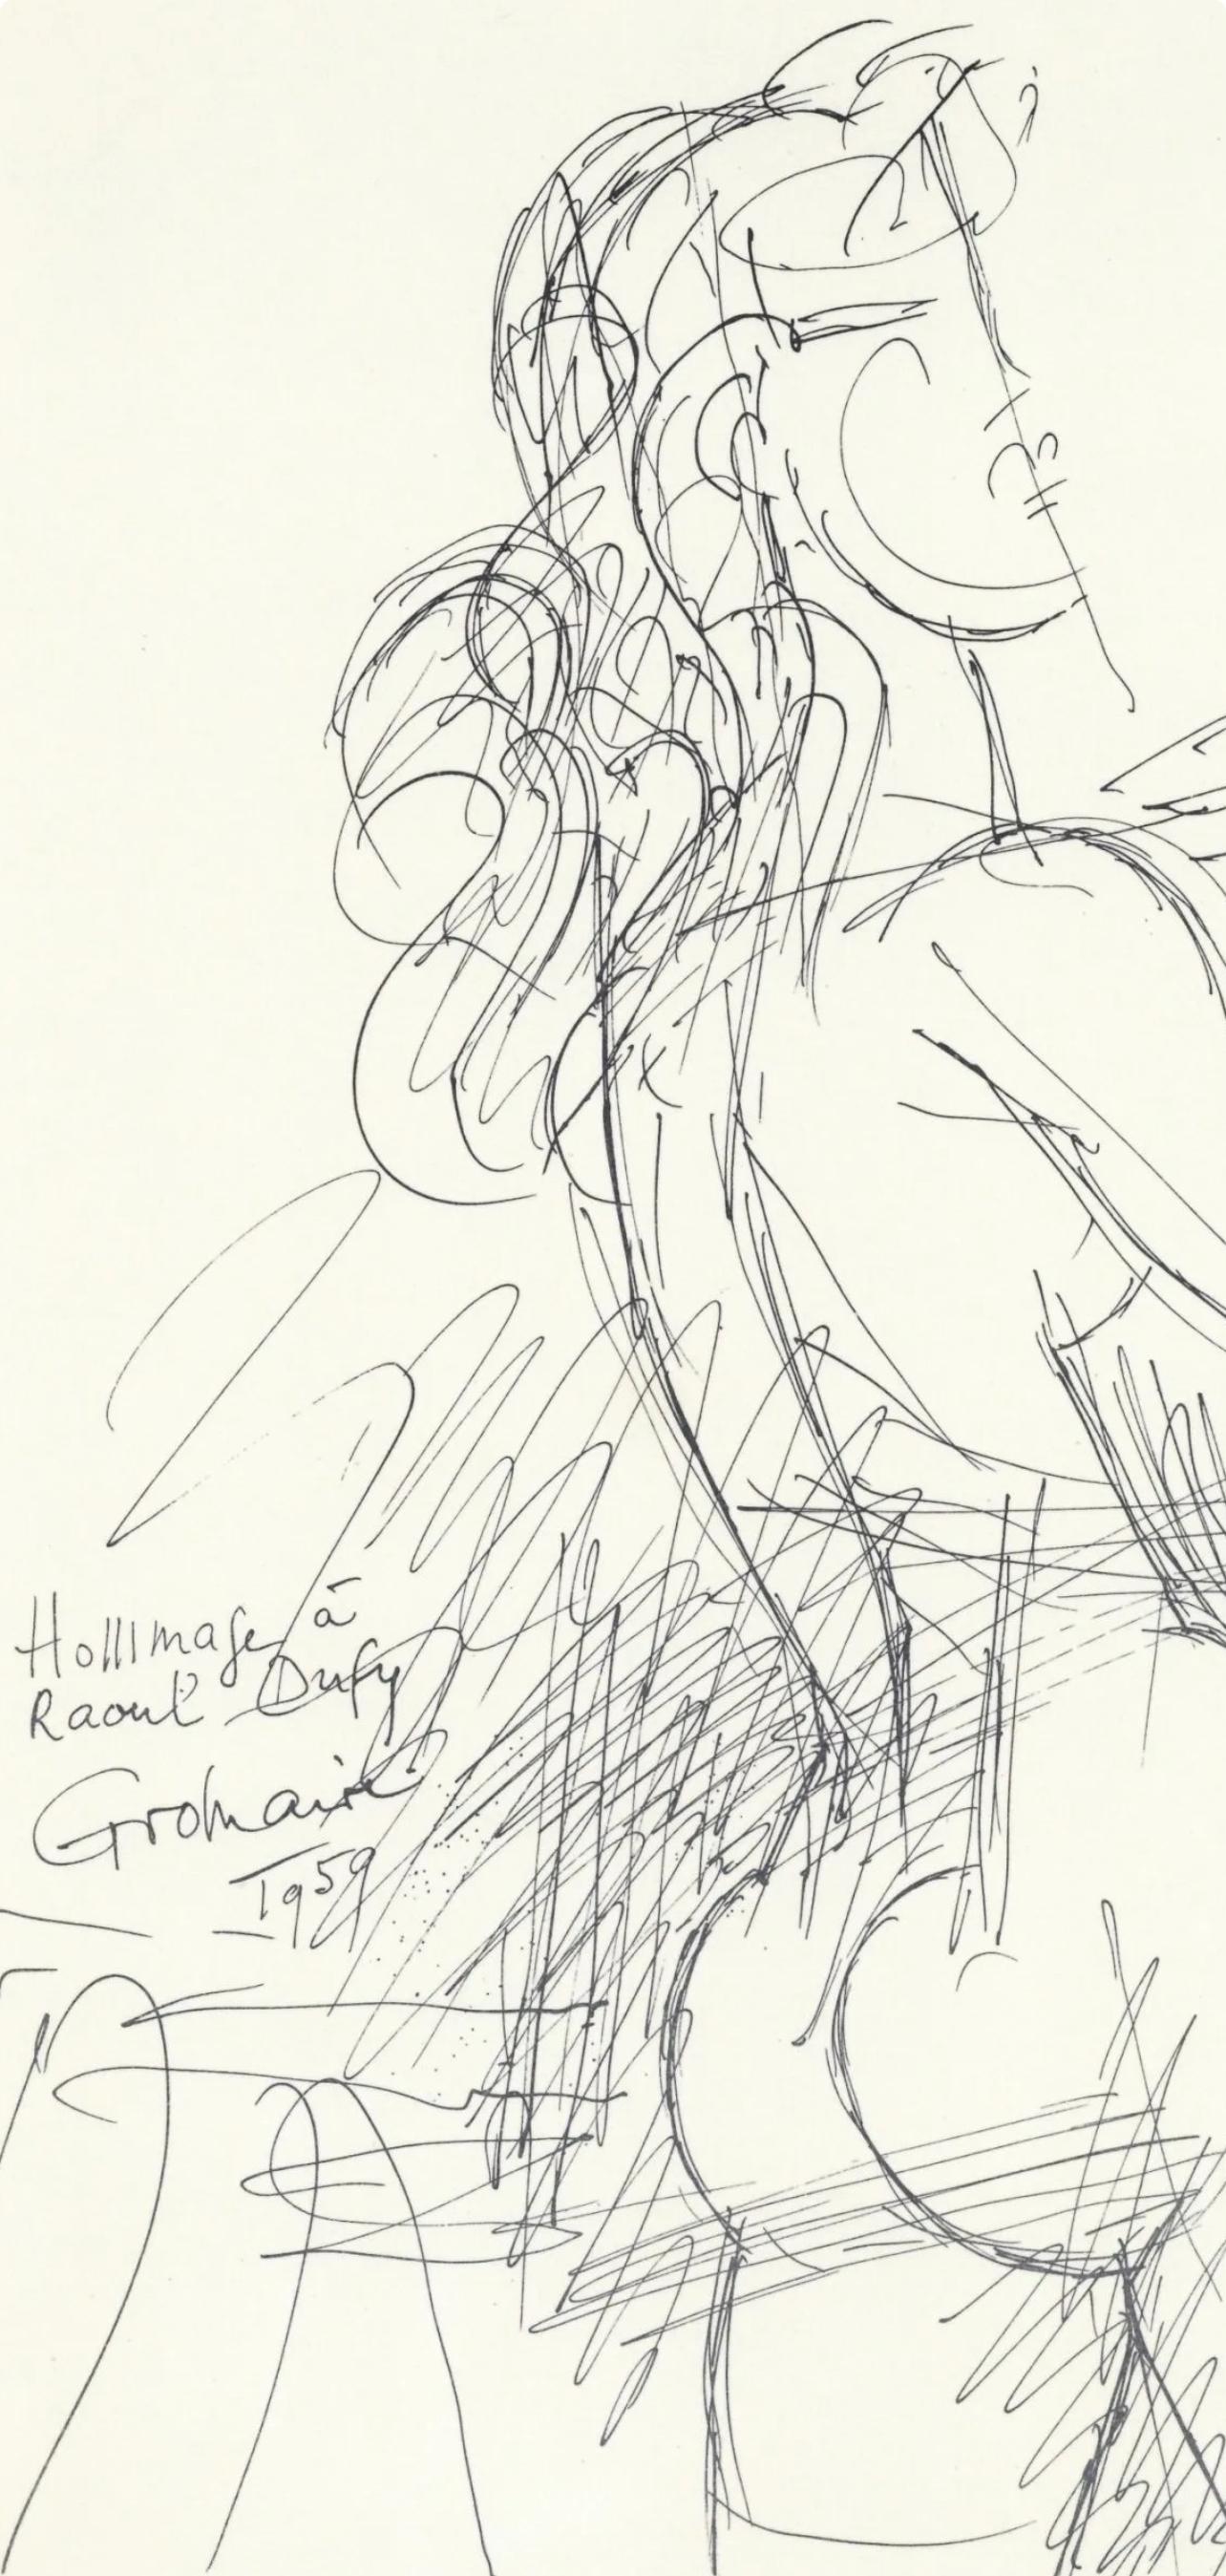 Gromaire, Dessin, Lettre à mon peintre Raoul Dufy (after) - Modern Print by Marcel Gromaire